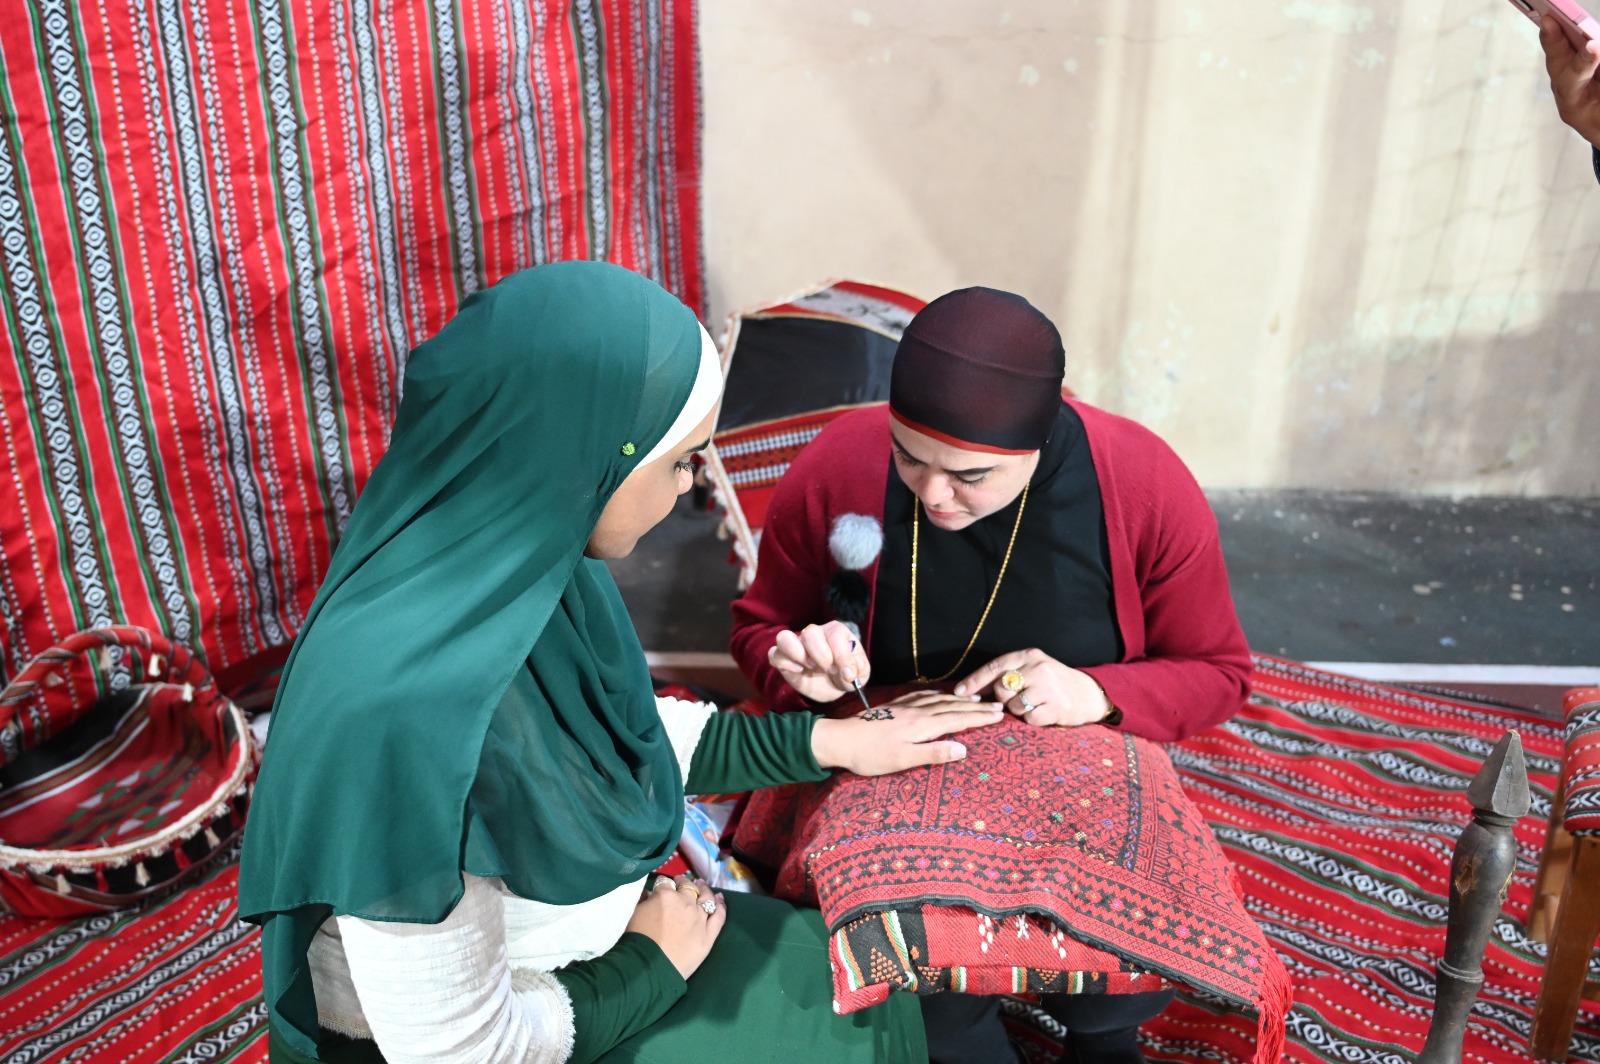  فيديو: مركز العجمي للشبيبة في يافا يحتفل باختتام سلسلة دورات تدريبية 